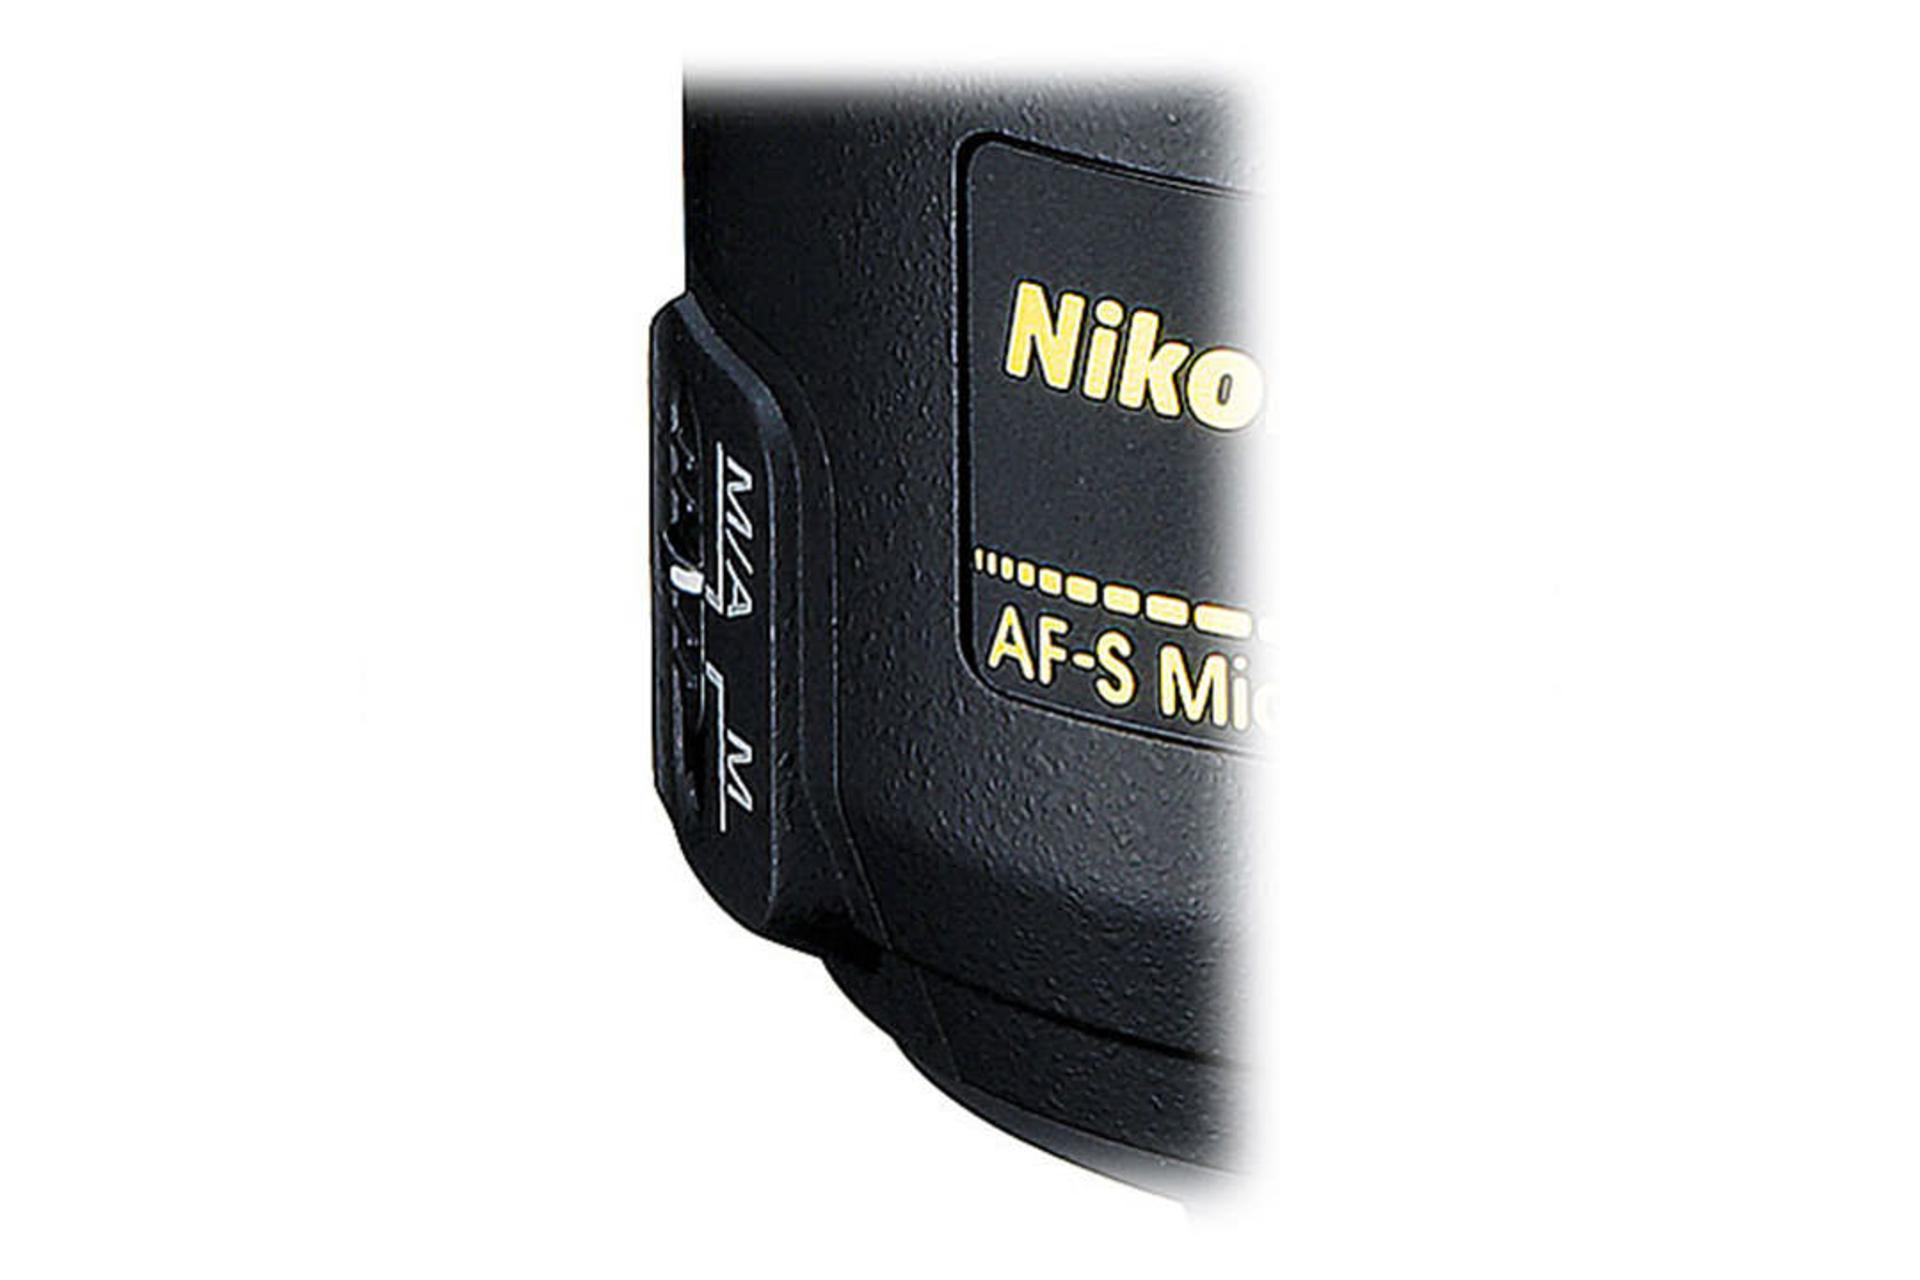 Nikon AF-S Micro-Nikkor 60mm f/2.8G ED	